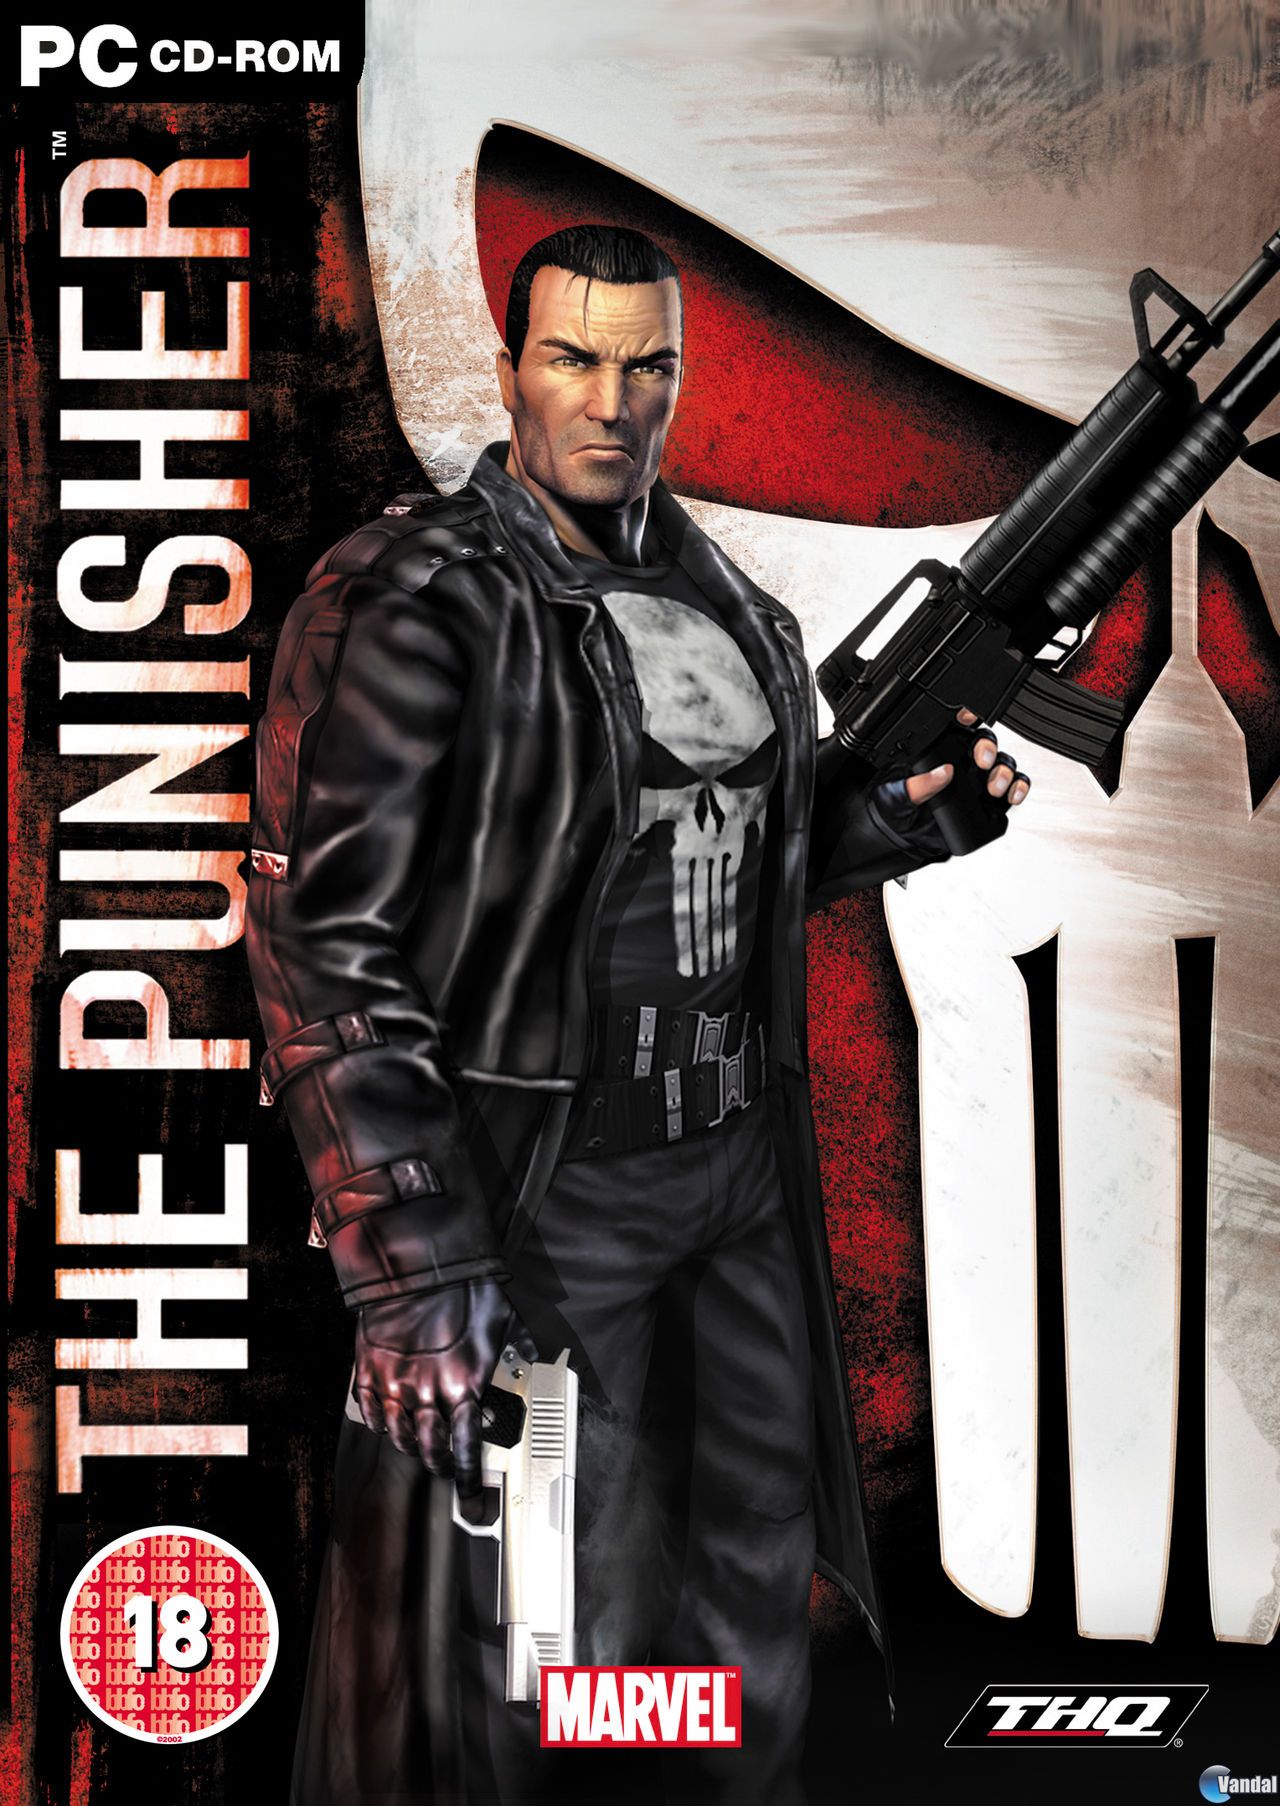 Central Mods: Download The Punisher (O Justiceiro) + Tradução